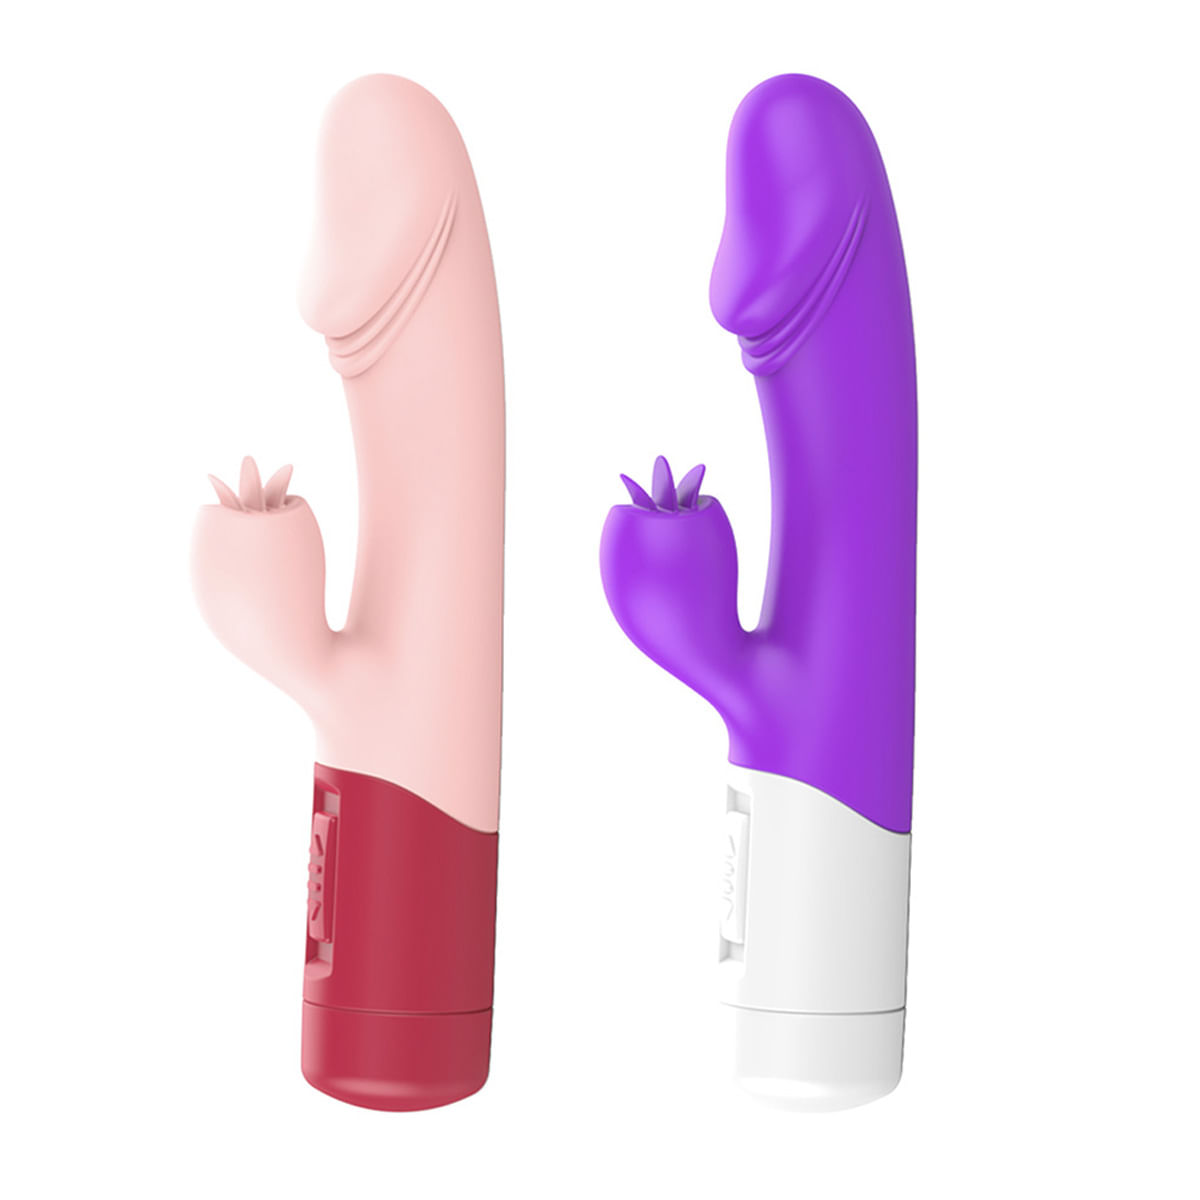 Vibrador Estimulador de Clitoris com 2 Velocidades de Vibração Vip Mix